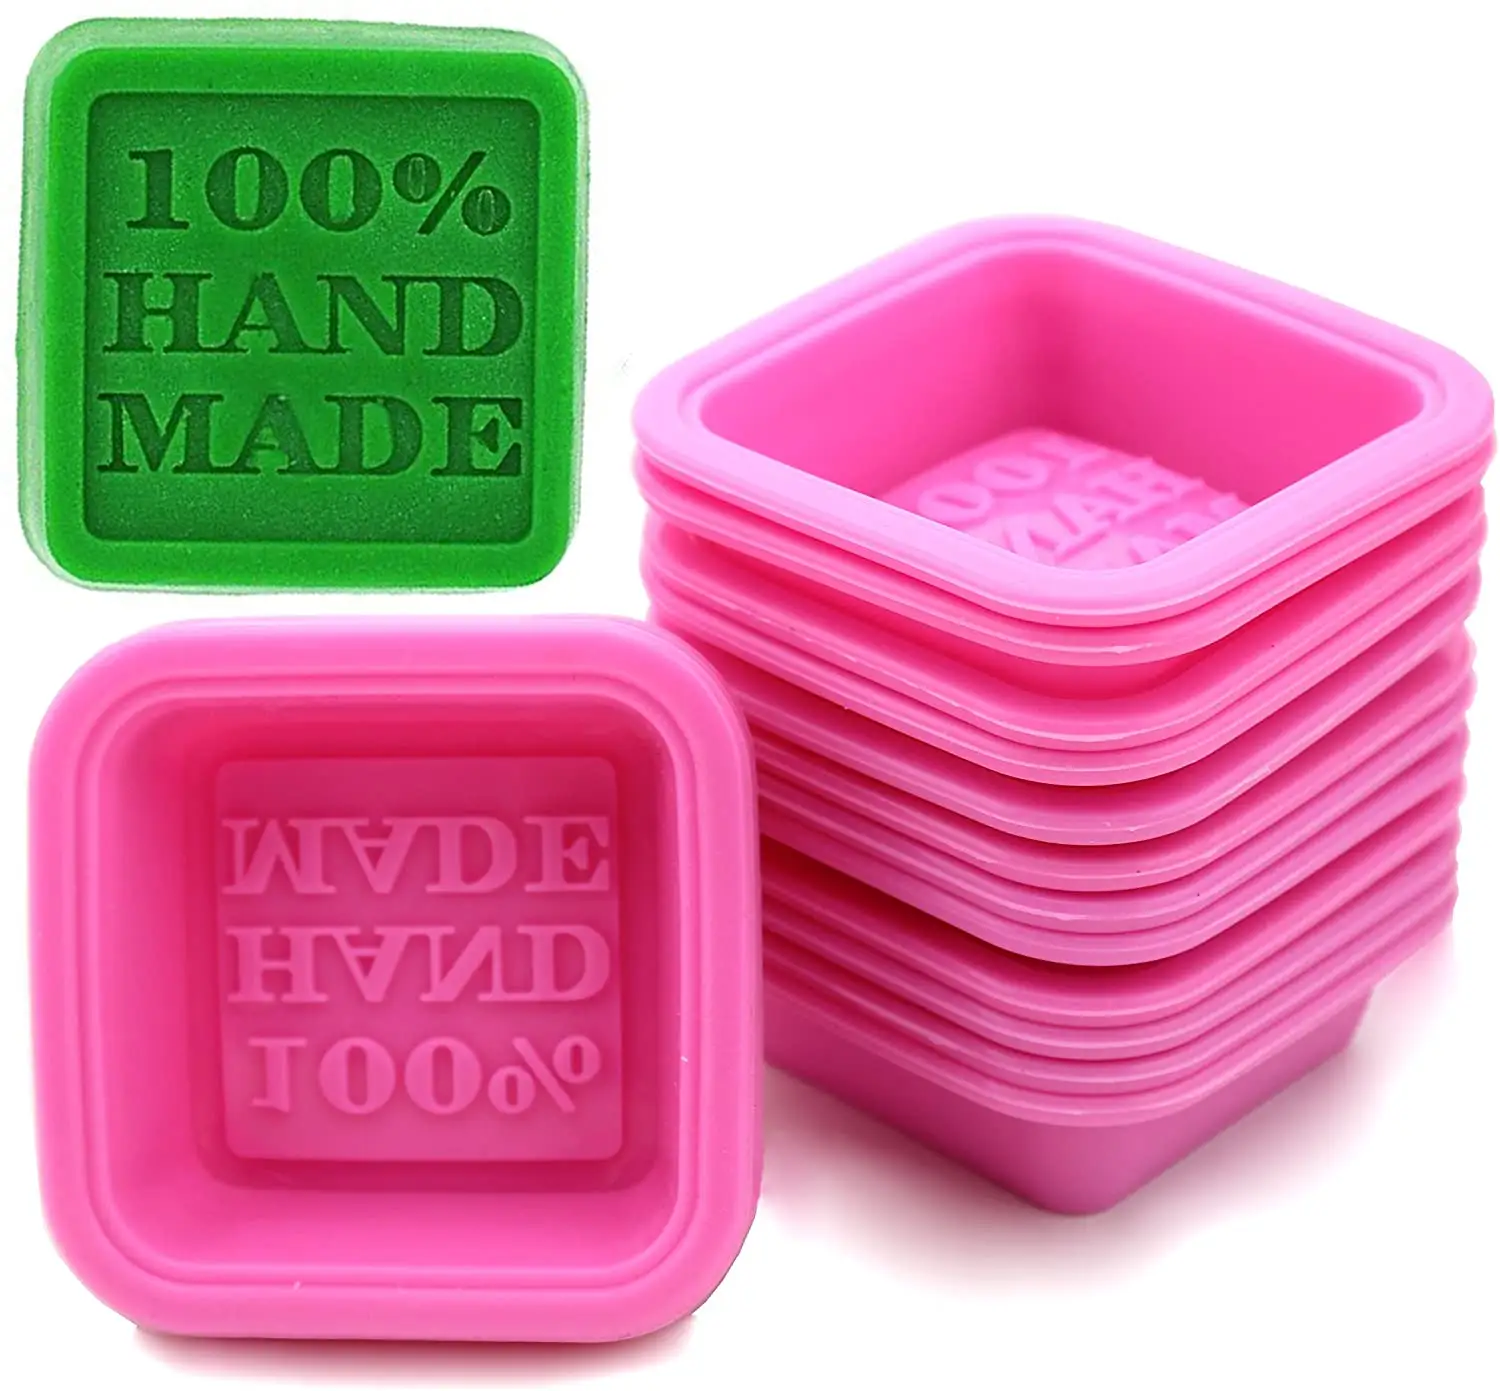 Экологически чистые формы для мыла ручной работы 100%, одноквадратные силиконовые формы для выпечки тортов или мыла